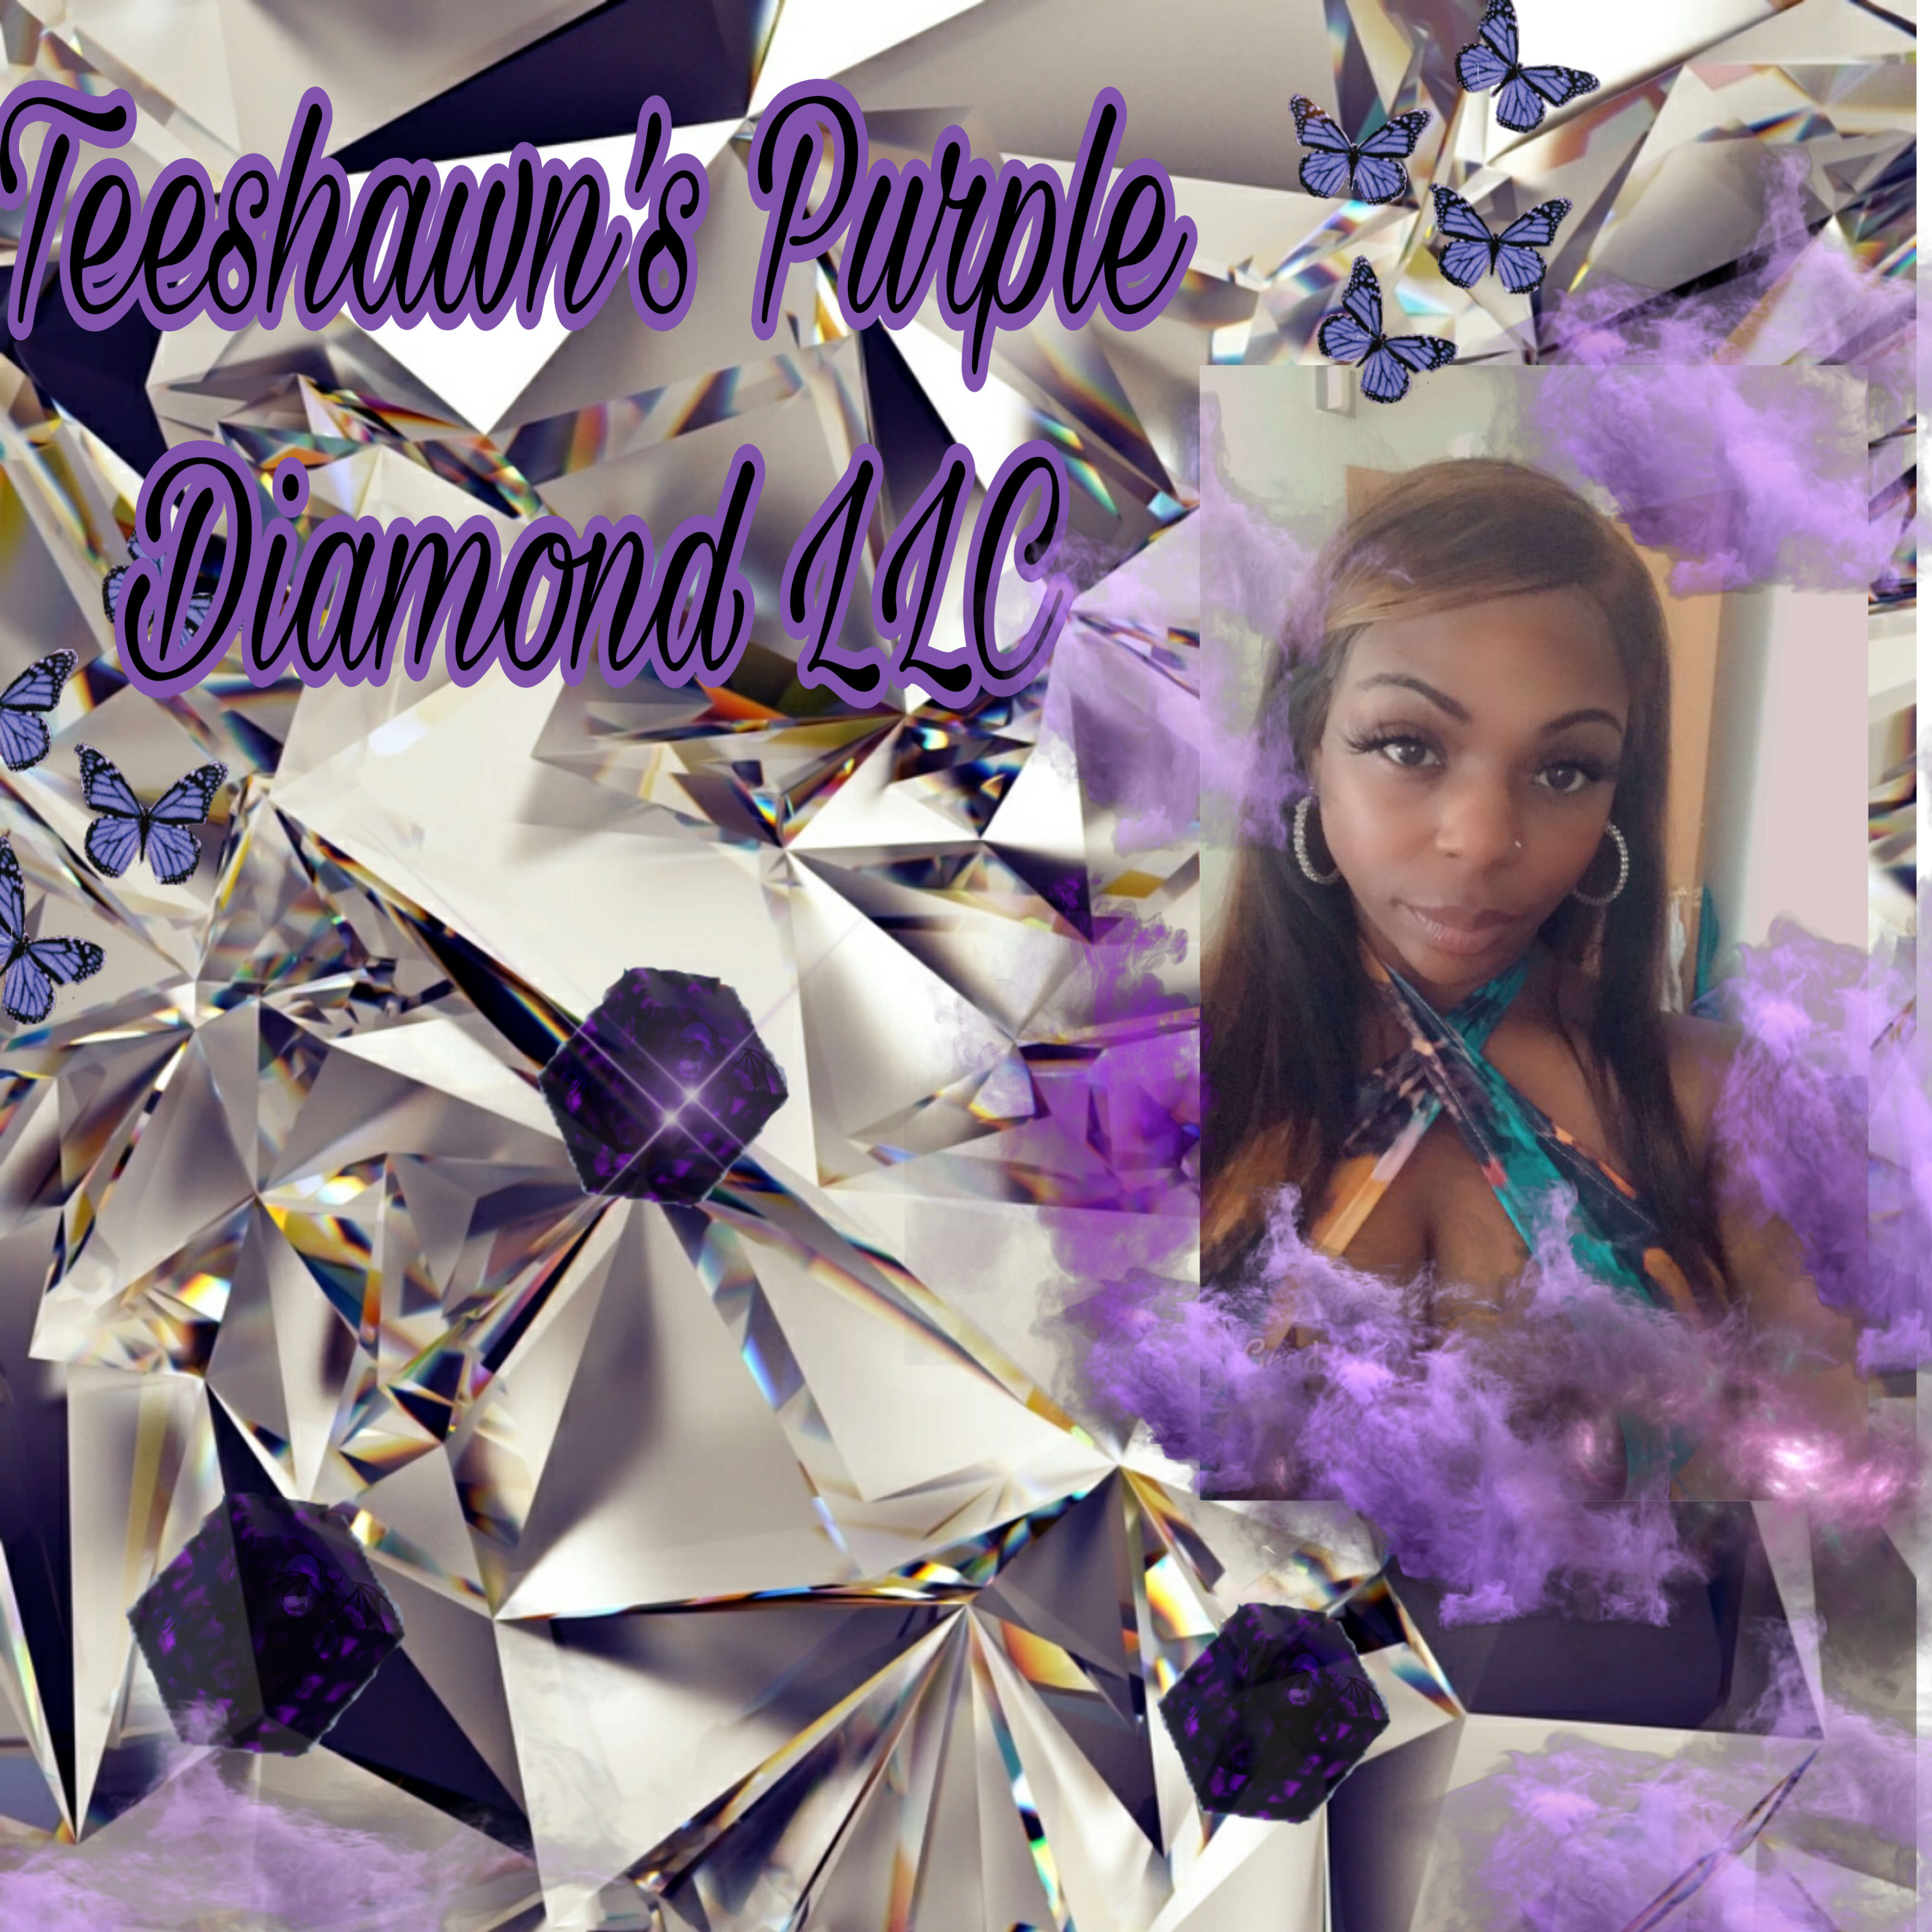 Teeshawns Purple Diamond LLC